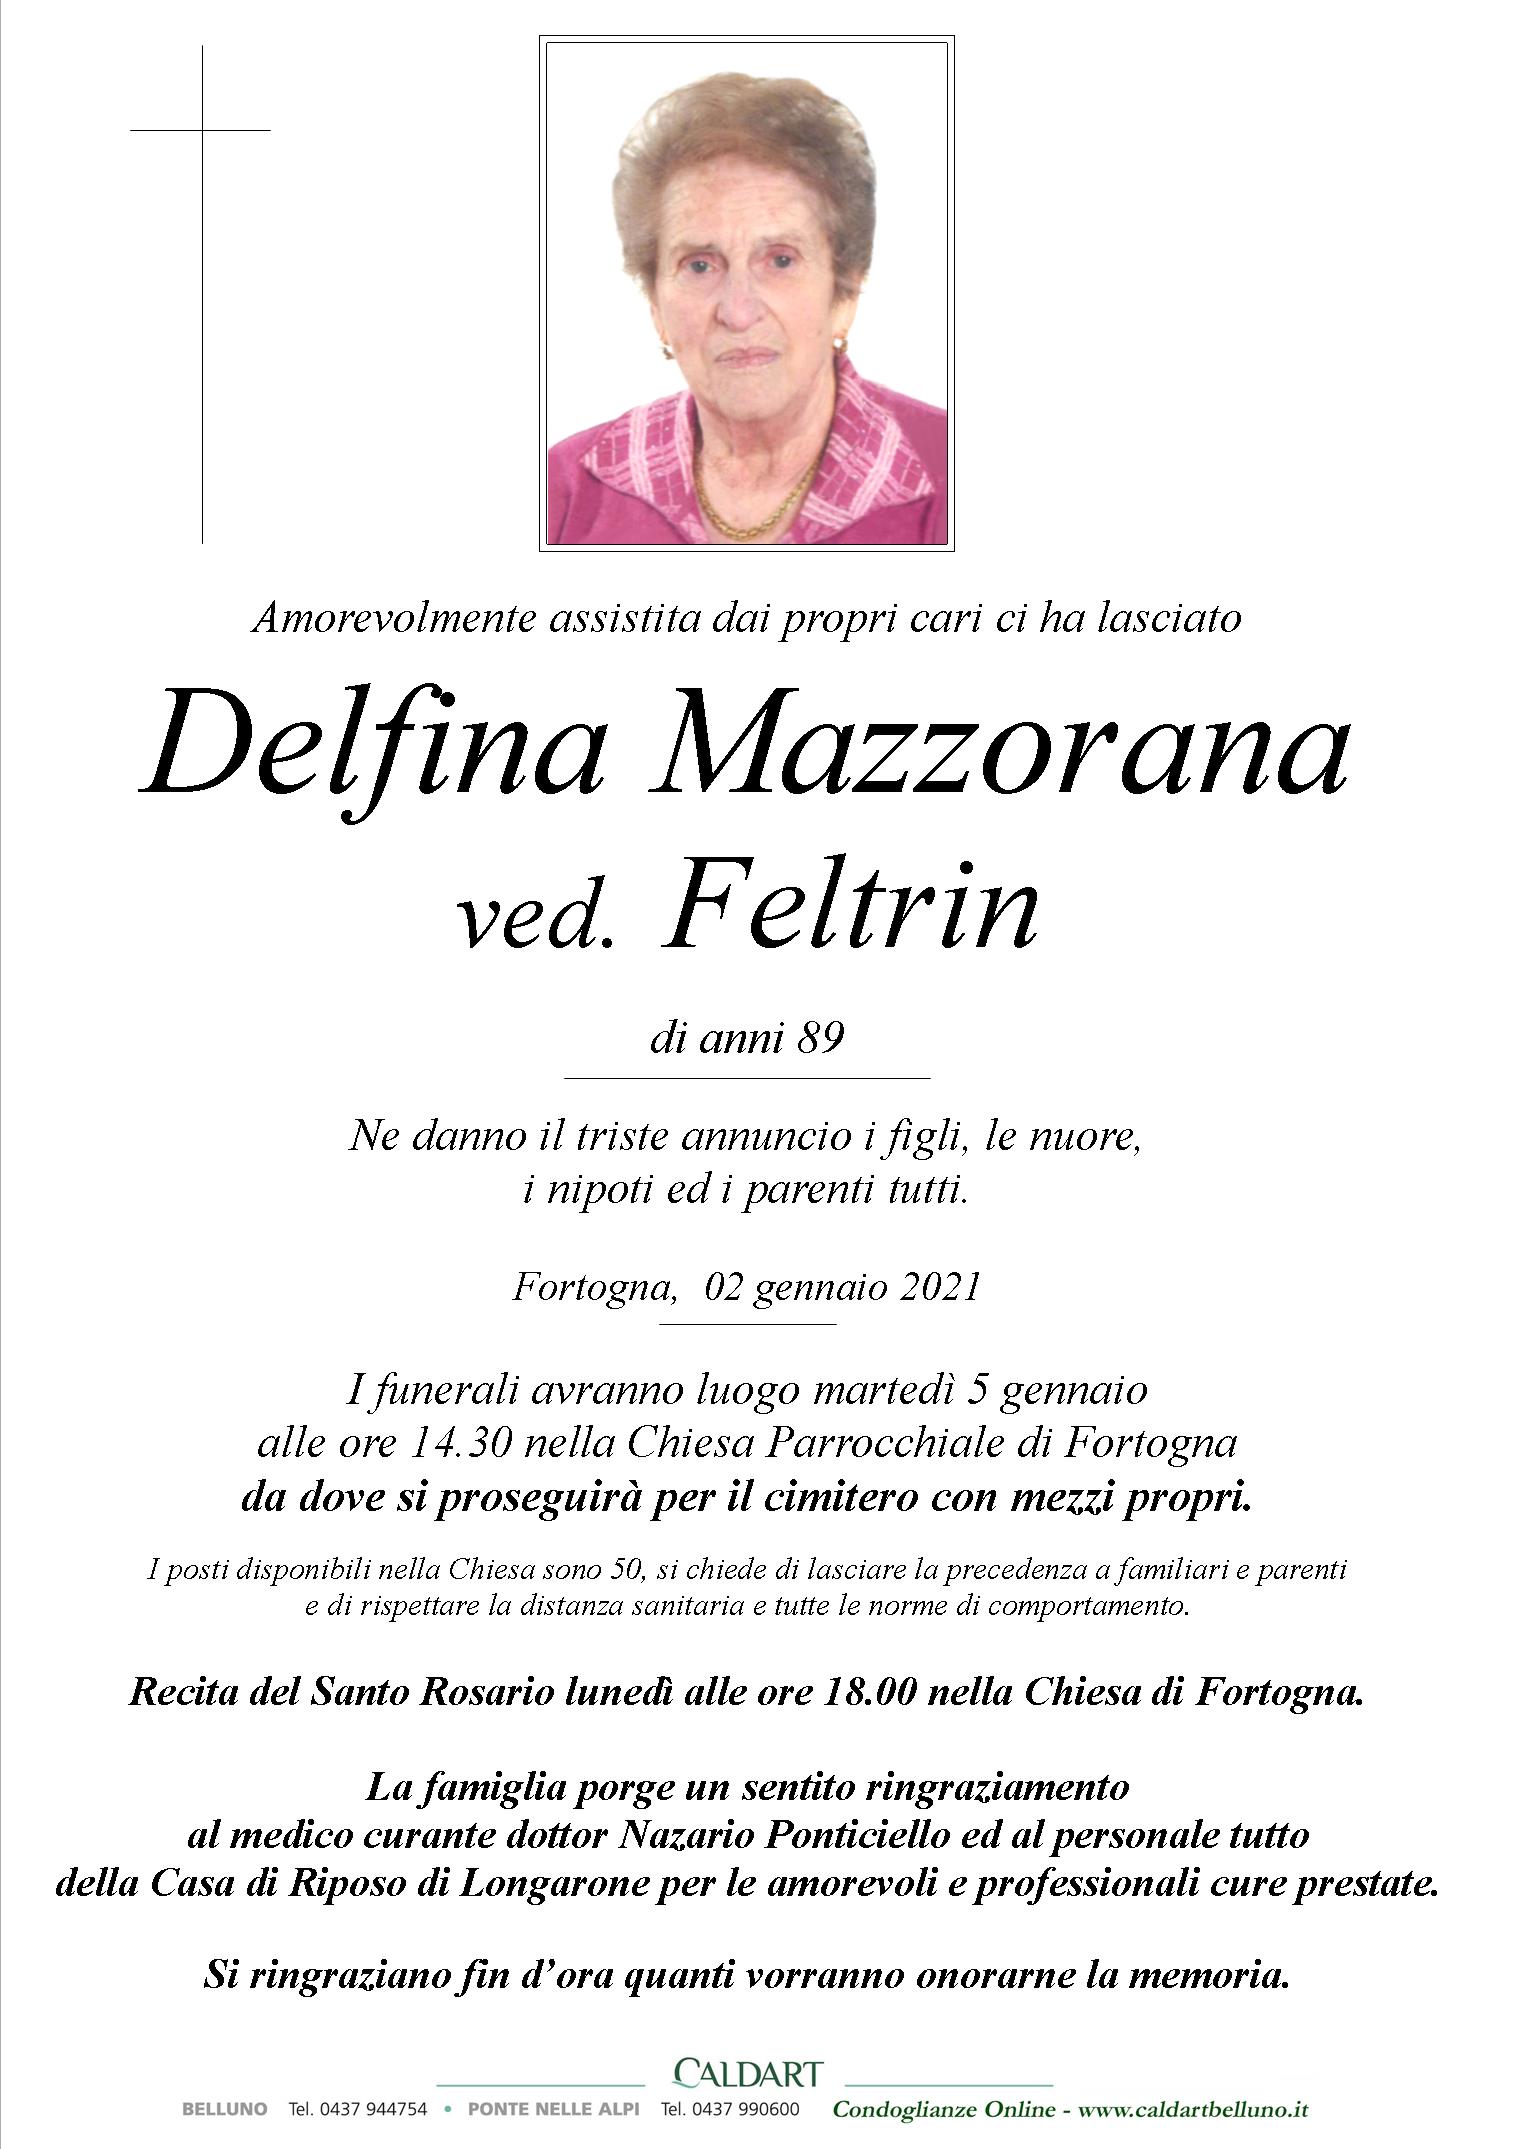 Mazzorana Delfina